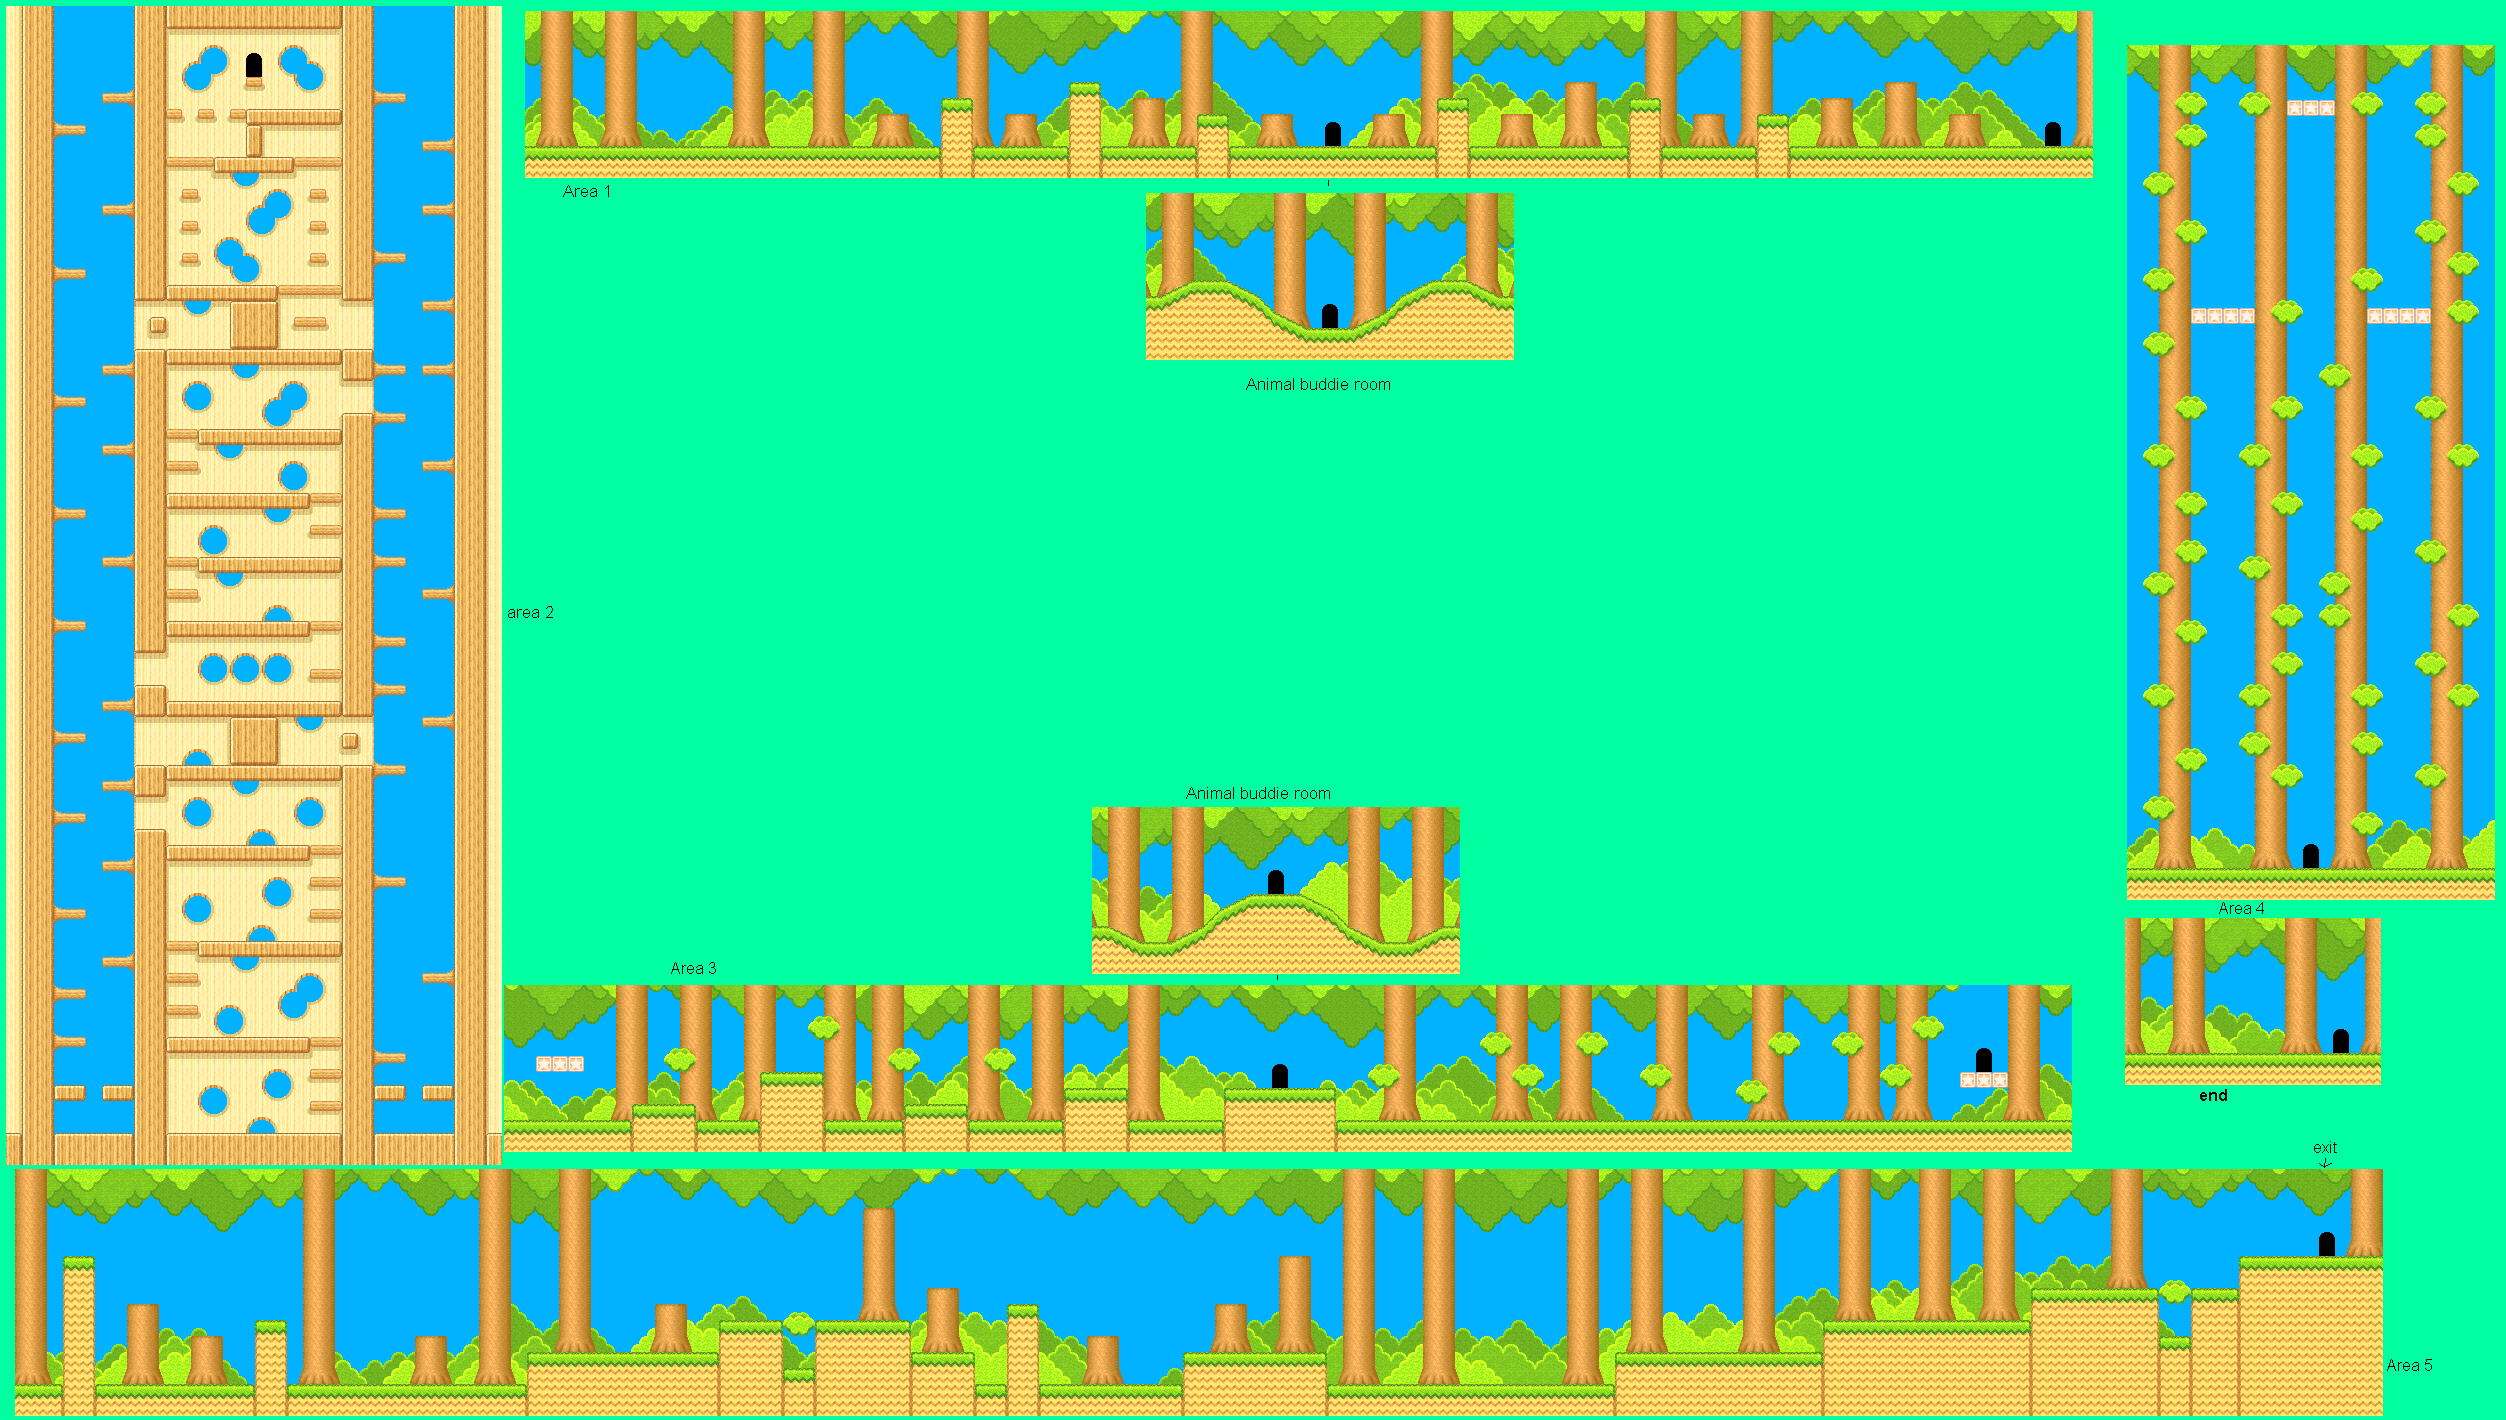 Kirby's Dream Land 3 - Grass Land 6